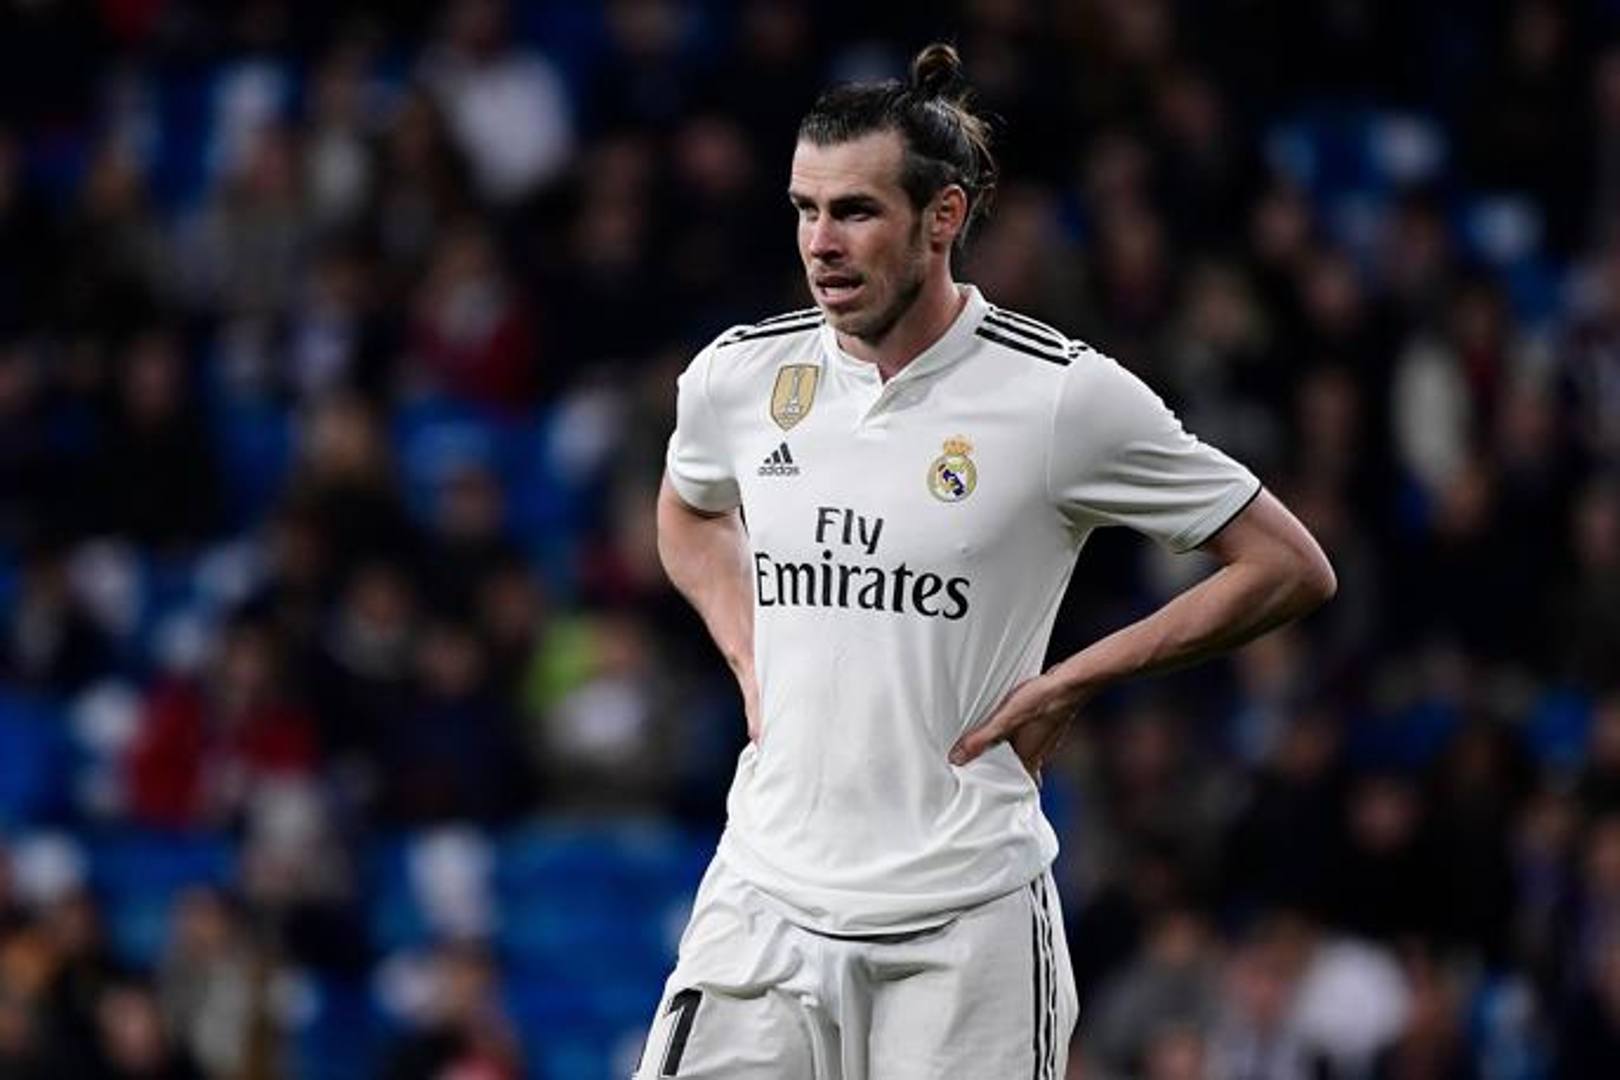  Al quinto posto della classifica stilata da France Football c'è Gareth Bale. Il gallese è il calciatore più pagato del Real Madrid con 40, 2 milioni. Foto: Afp  